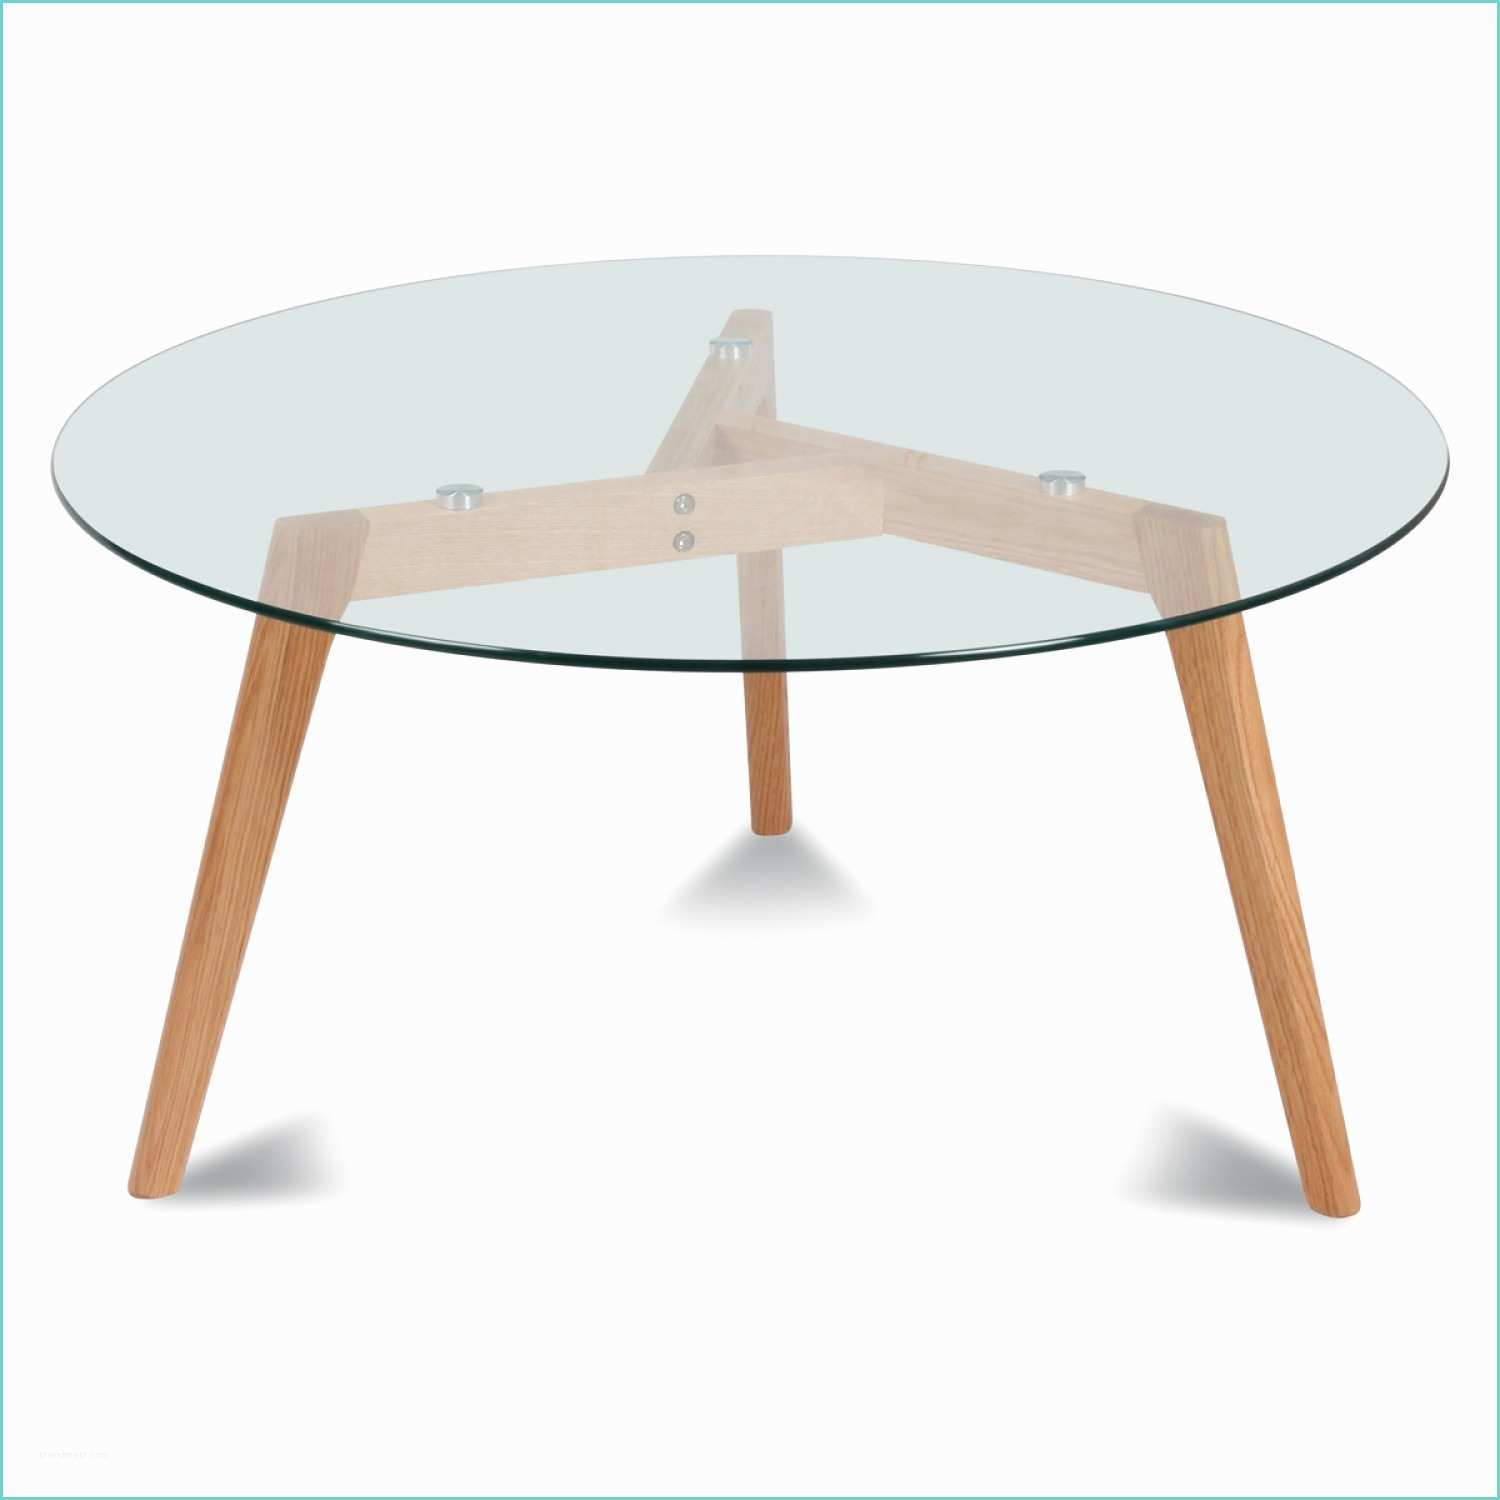 Plateau De Verre Pour Table Table Ronde Plateau De Verre Style Design Demeure Et Jardin